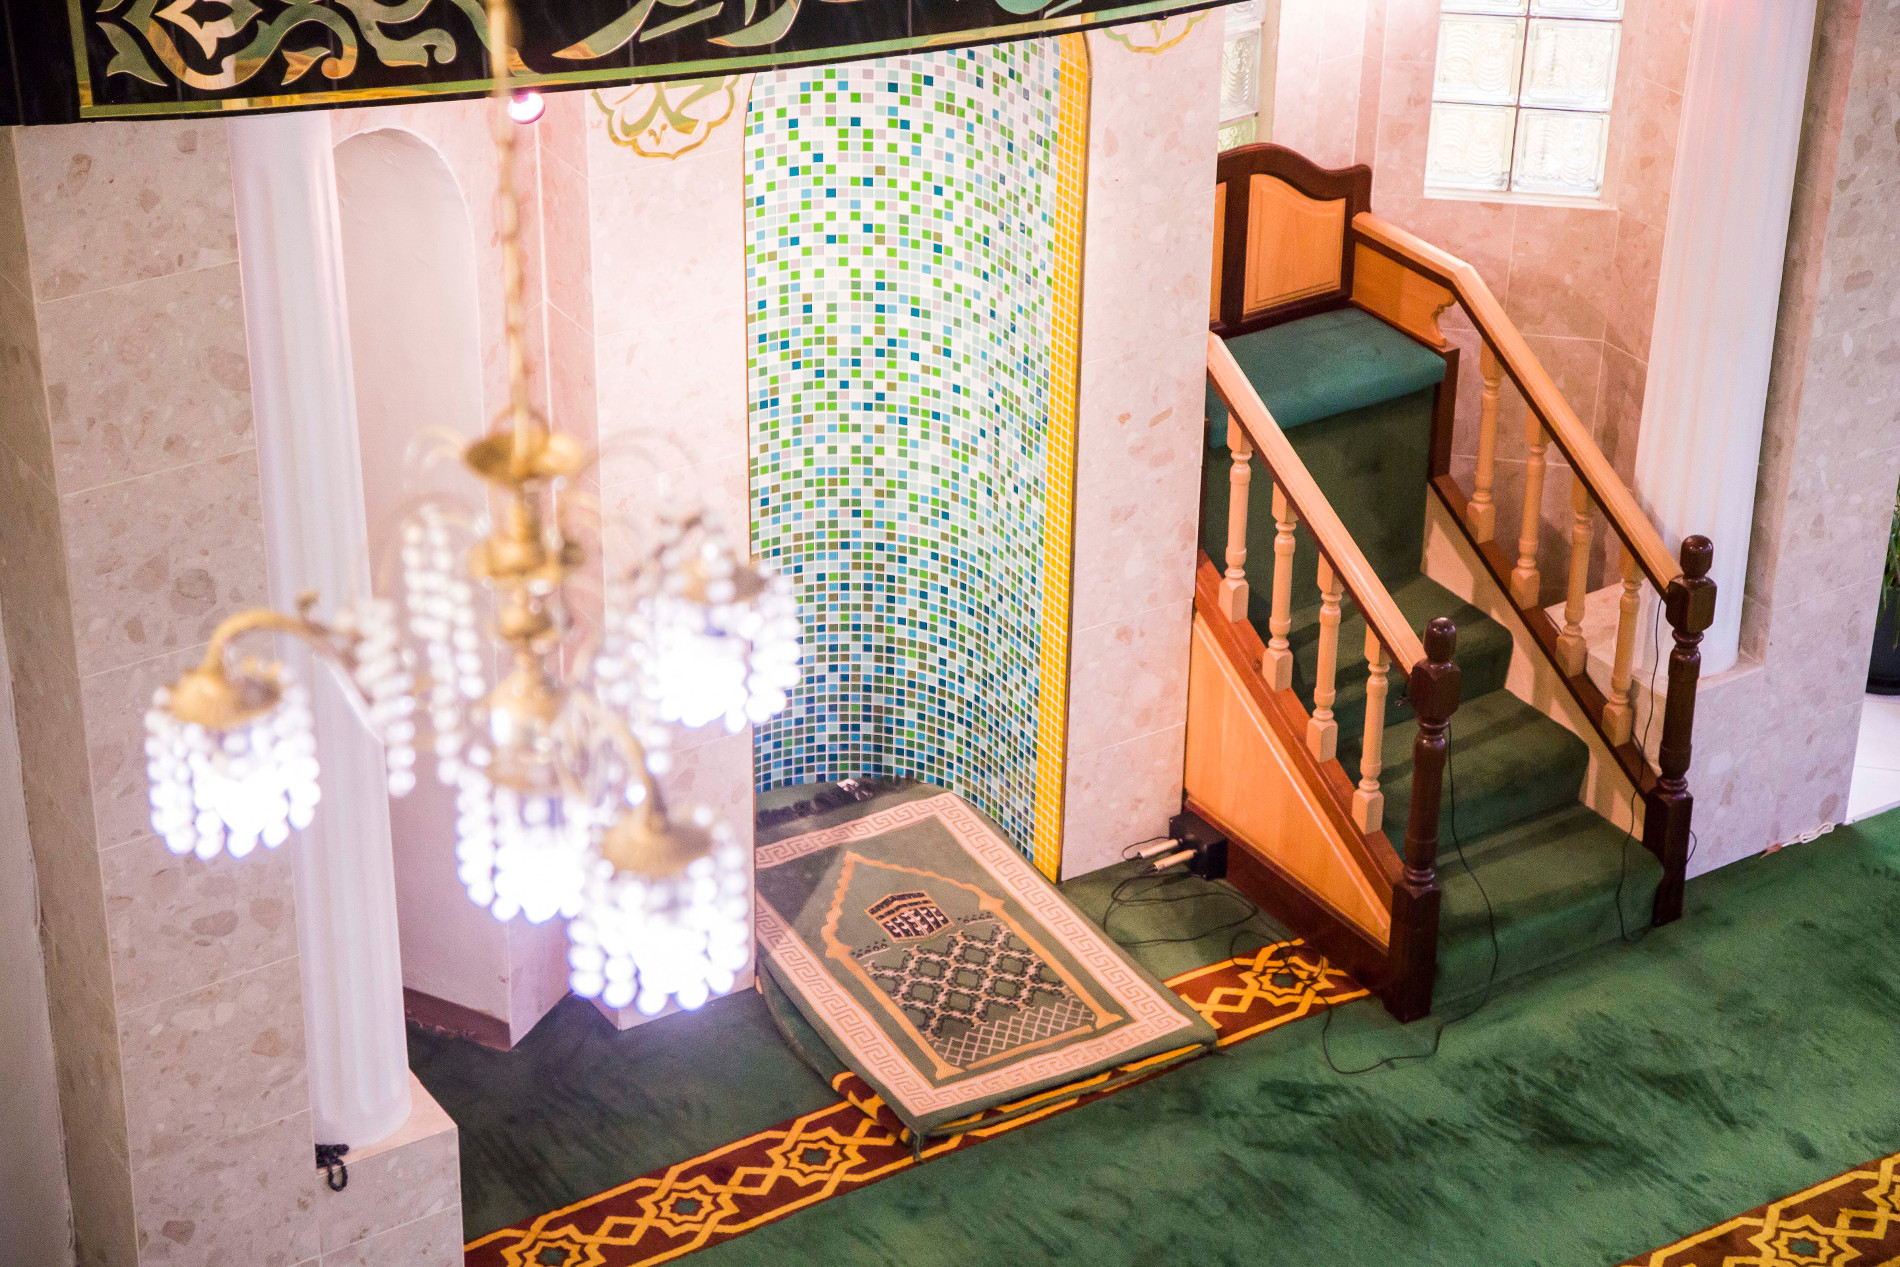 mowbray mosque inside